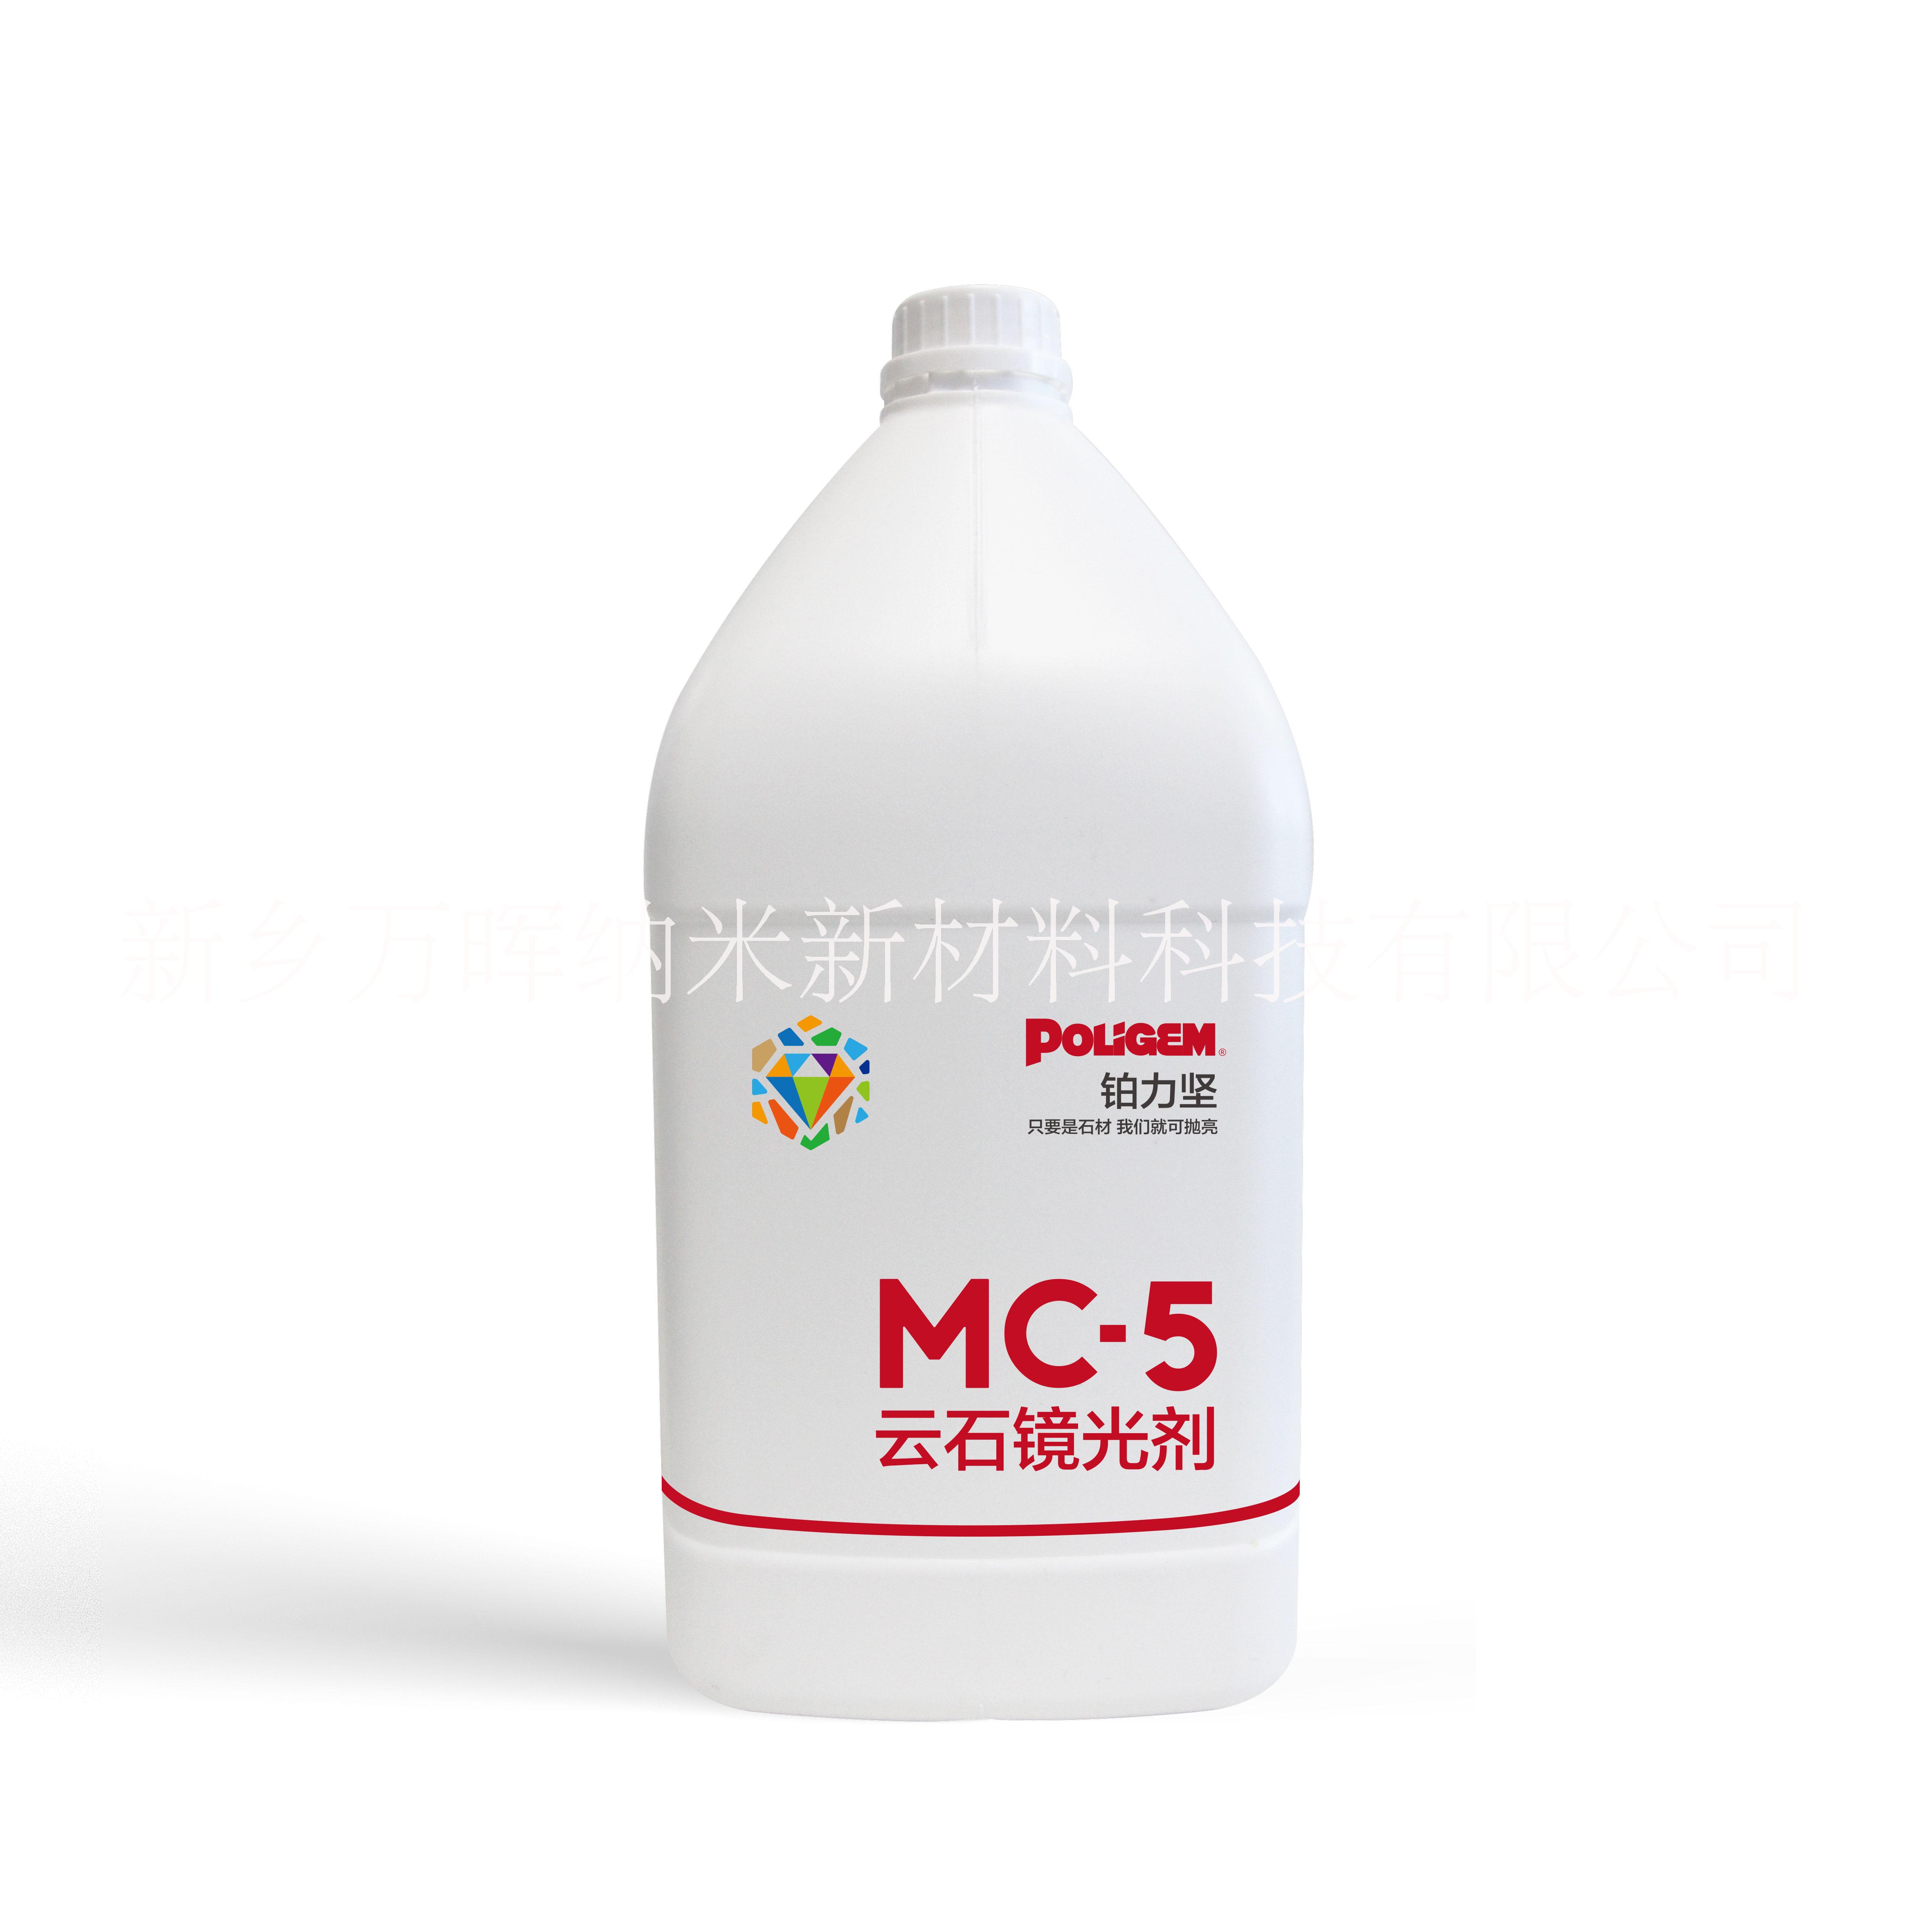 MC-5云石镜光剂图片